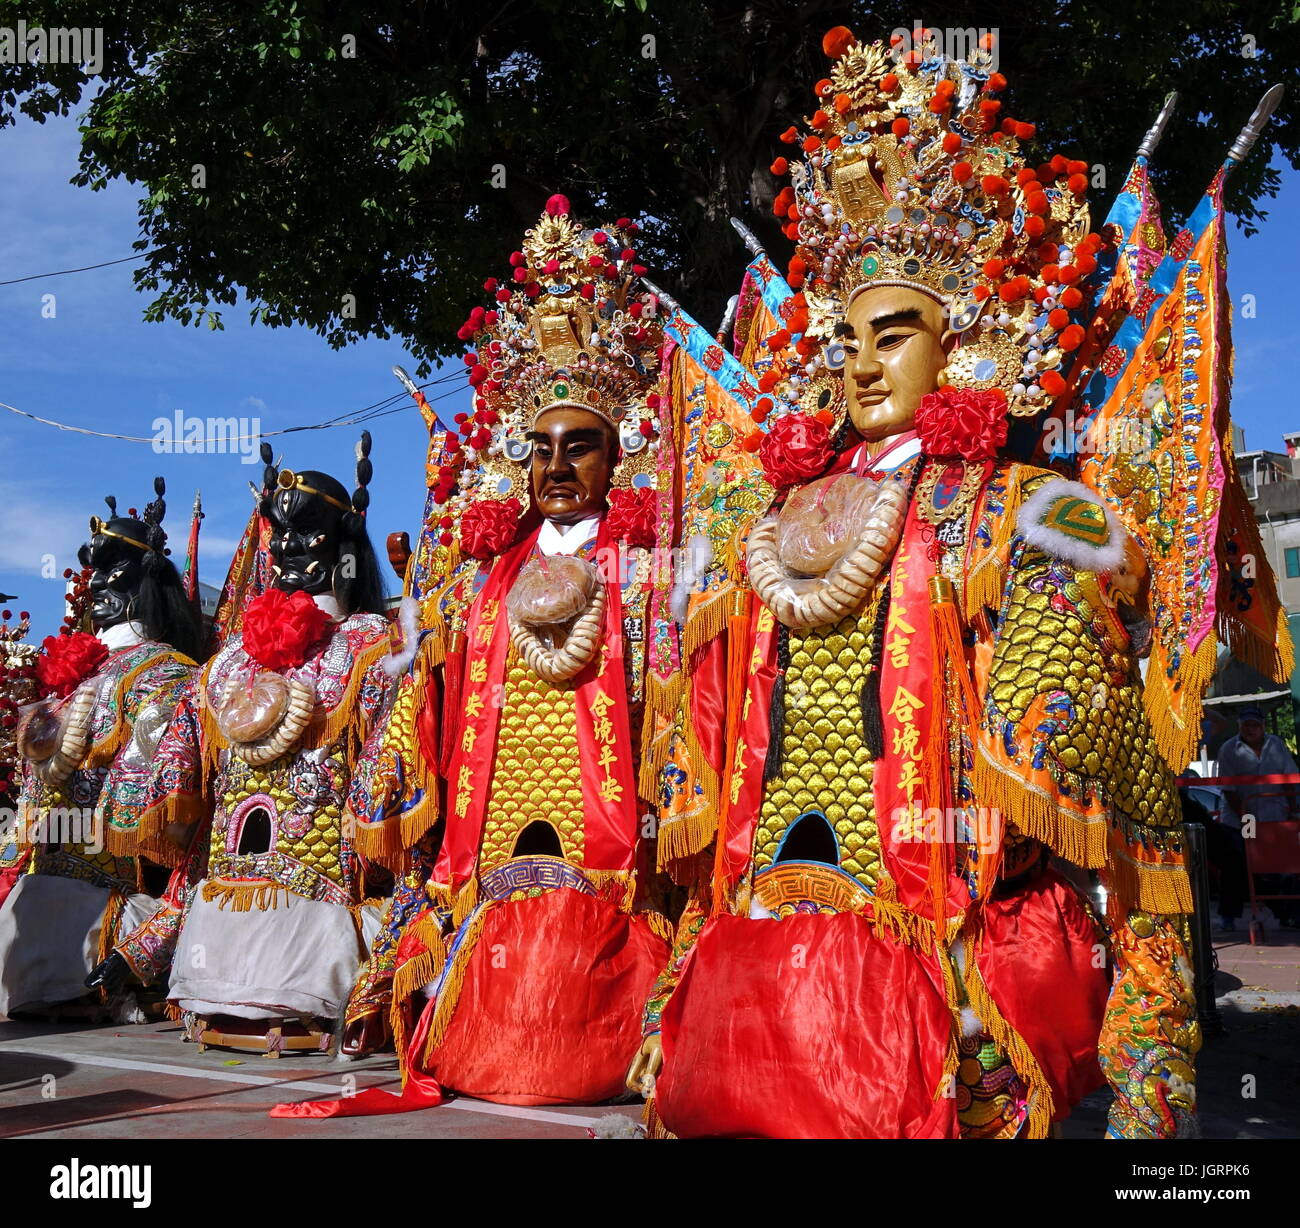 KAOHSIUNG, TAIWAN -- 10 juin , 2017 : un ensemble de grands masques élaborés et les costumes portés par des danseurs pour représenter les divinités populaires de Taiwan's folk religio Banque D'Images